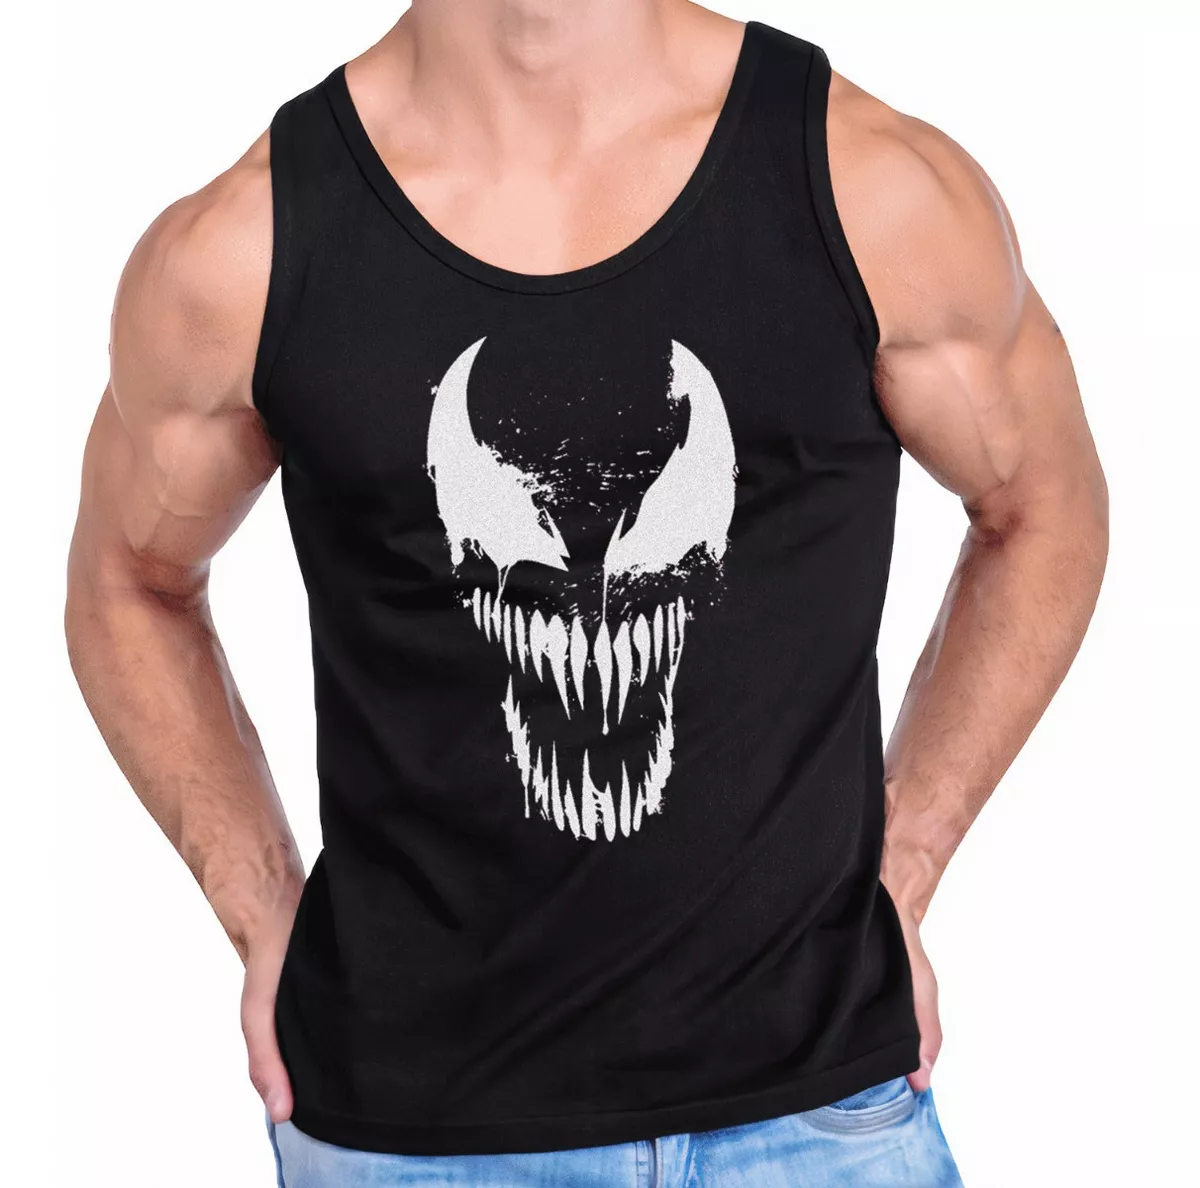 Camiseta Tank Top P/hombre Estampada P/gym Fitness Venom